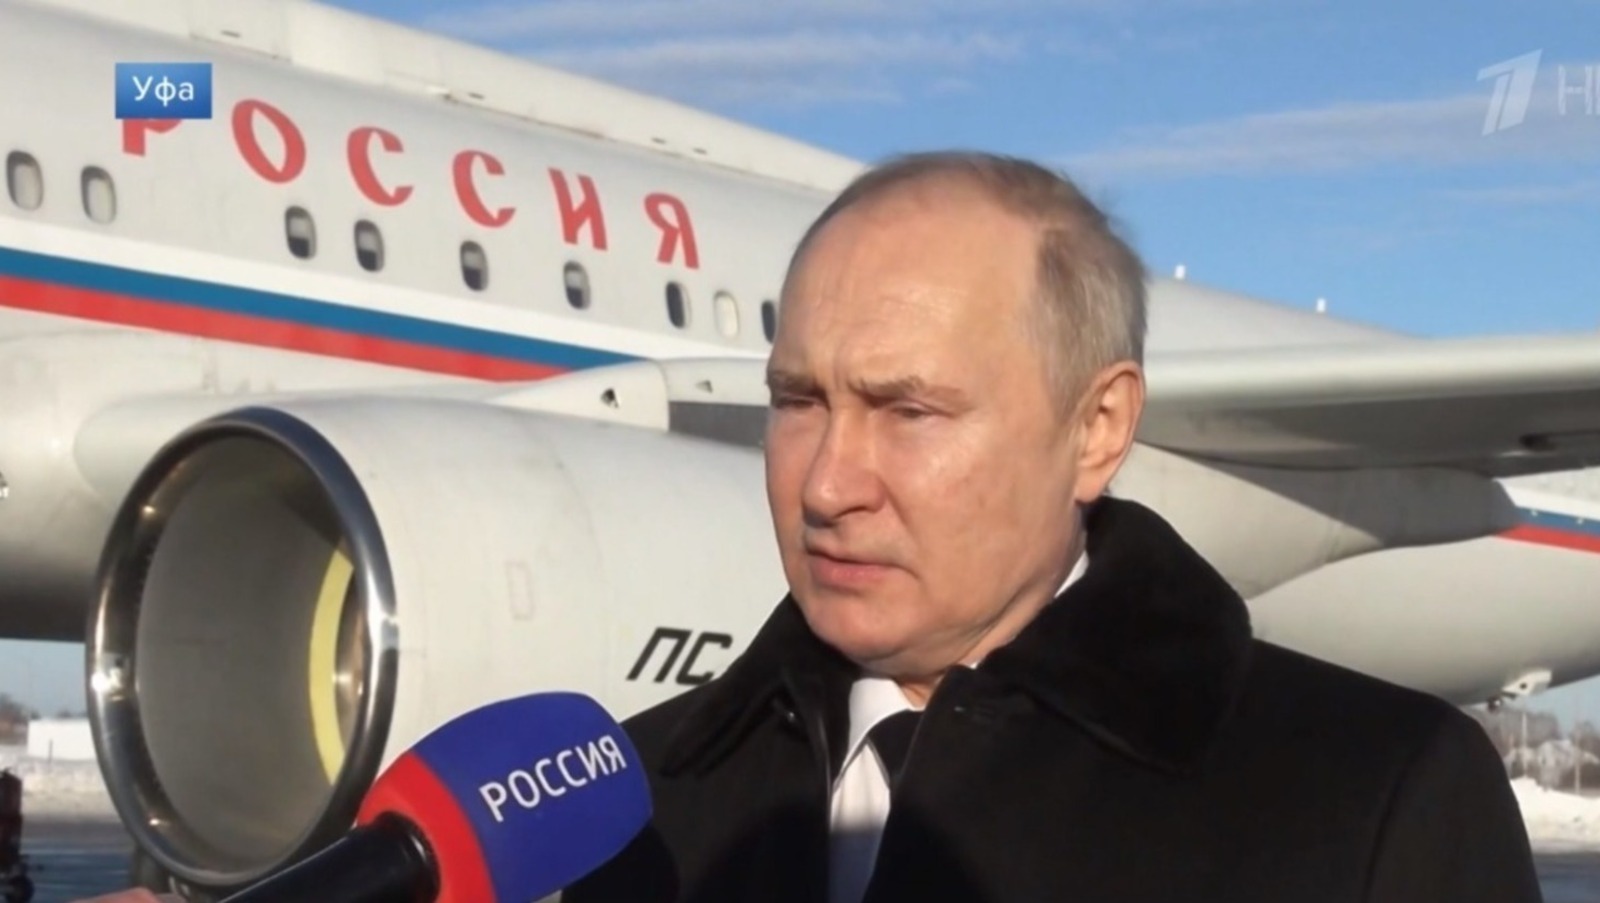 Комментарии экспертов про визит Владимира Путина в Башкирию